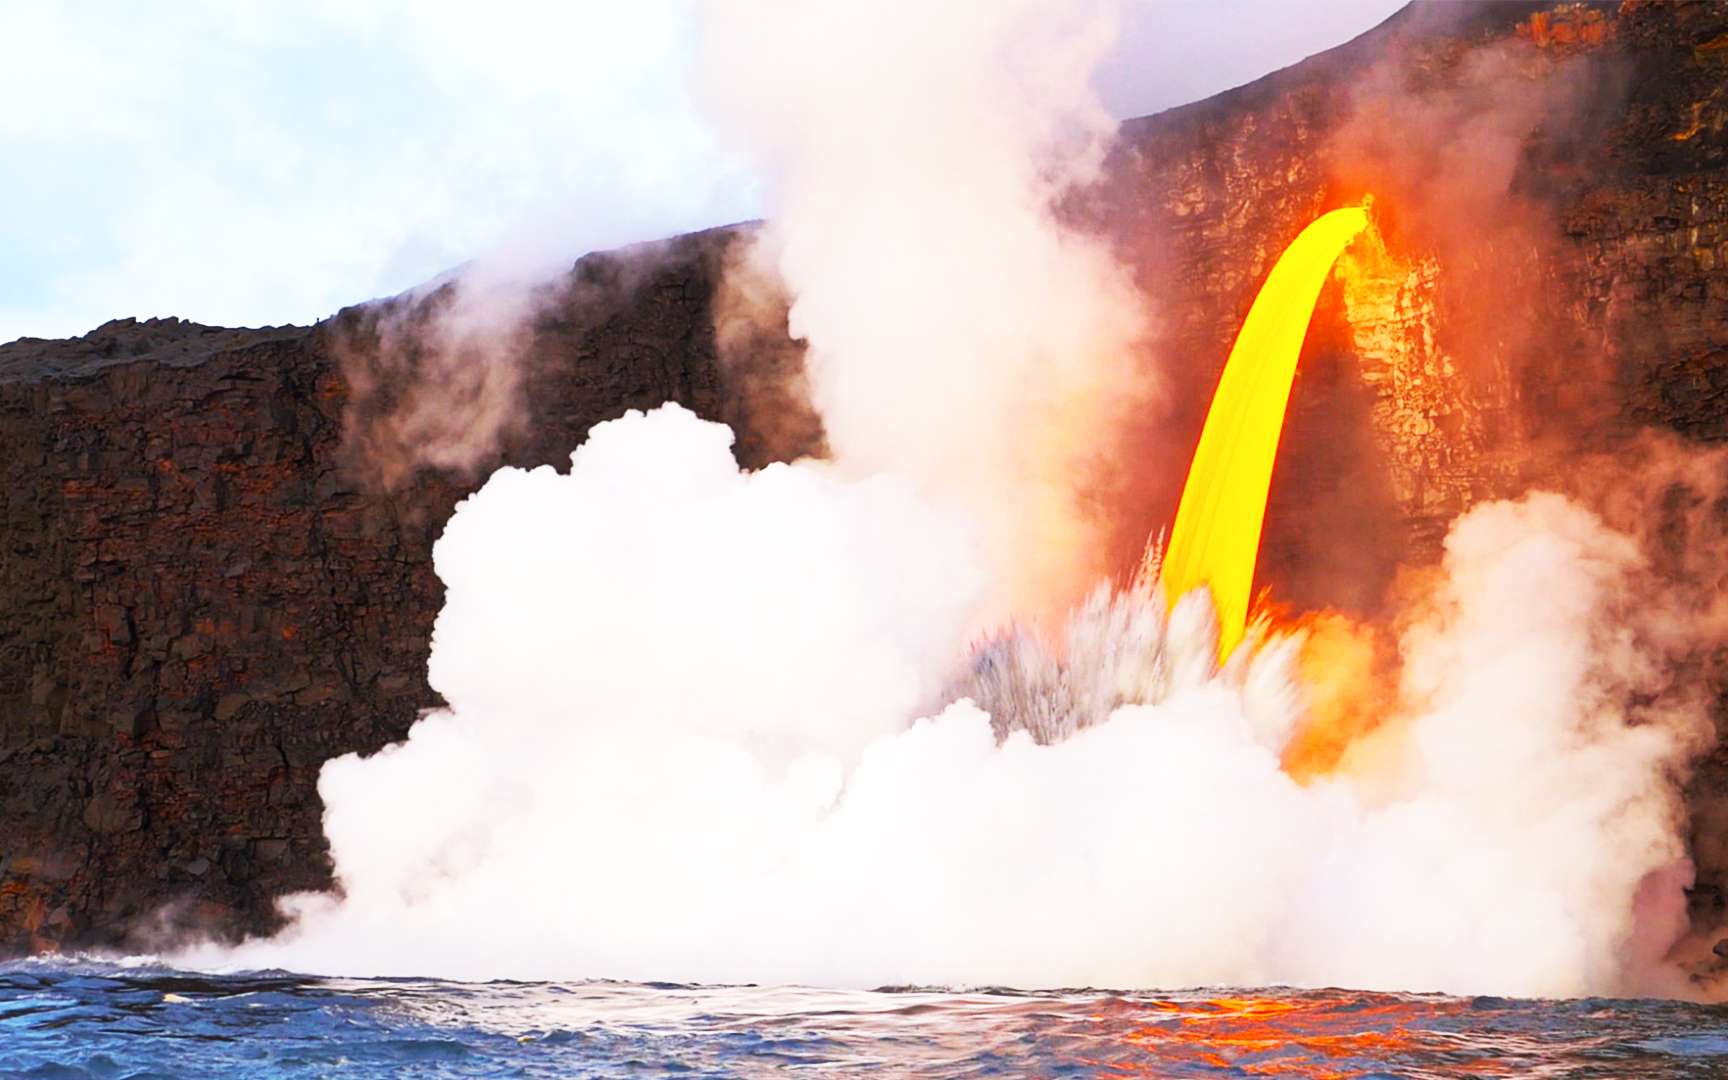 Les fontaines de lave qui jaillissent du volcan Kilauea à Hawaï se déversent dans l'océan Pacifique. © Envato Elements